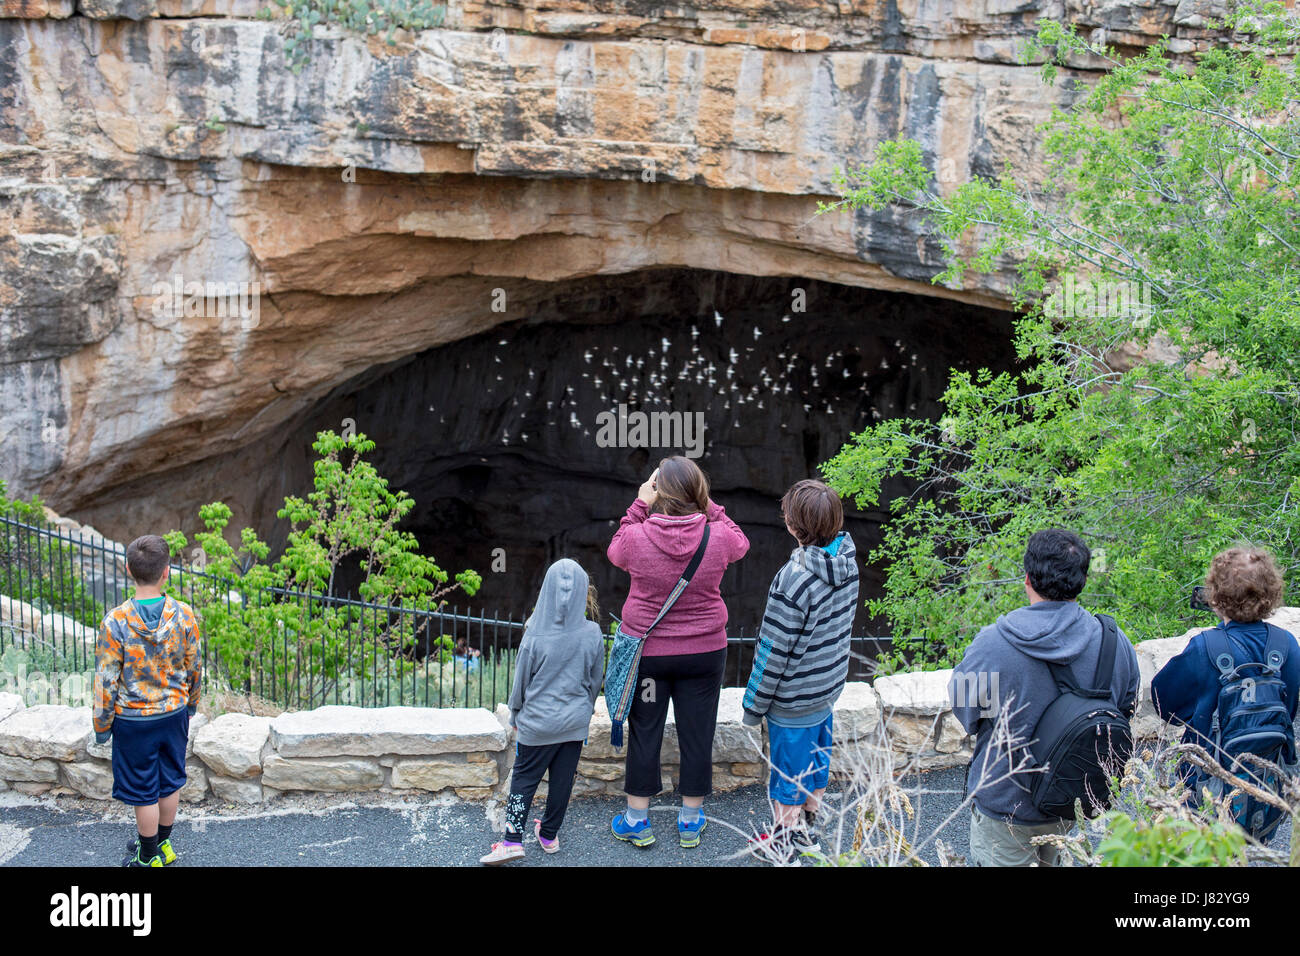 Carlsbad Caverns National Park, New Mexico - Touristen sehen Höhle Schwalben (Petrochelidon Fulva) aus der natürlichen Mündung nach Carlsbad Caverns fliegen Stockfoto